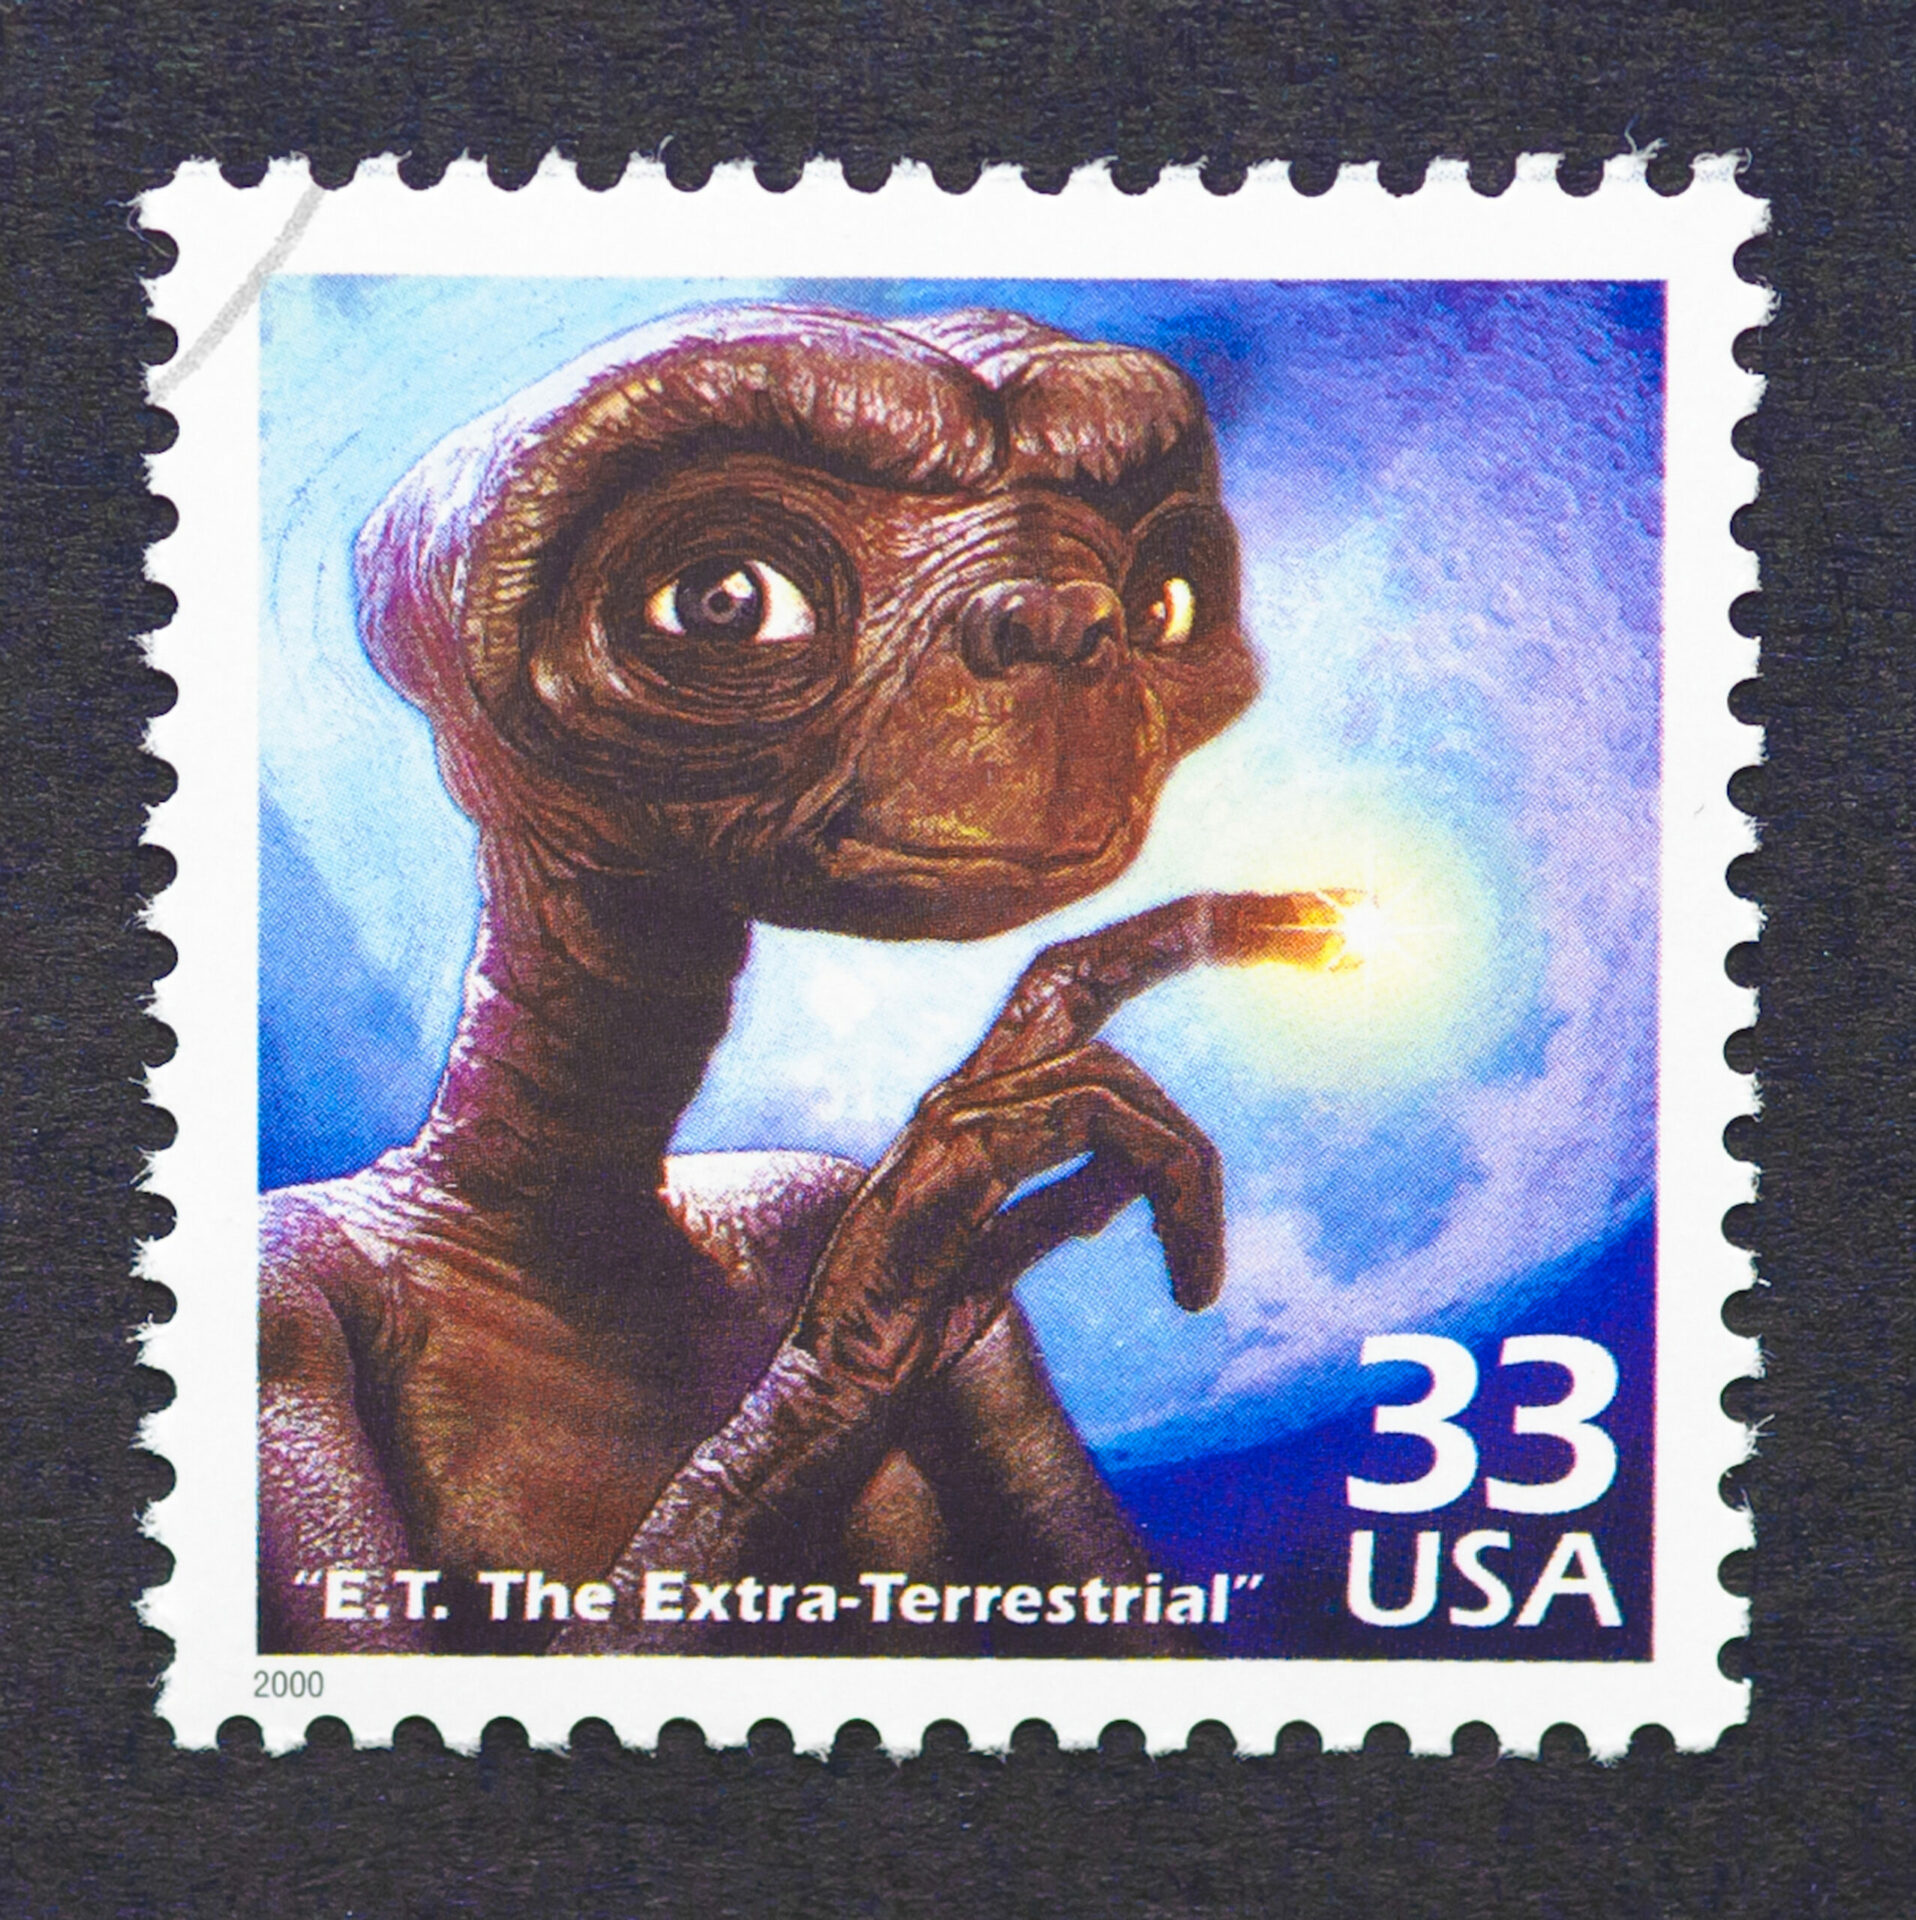 E.T. go home!